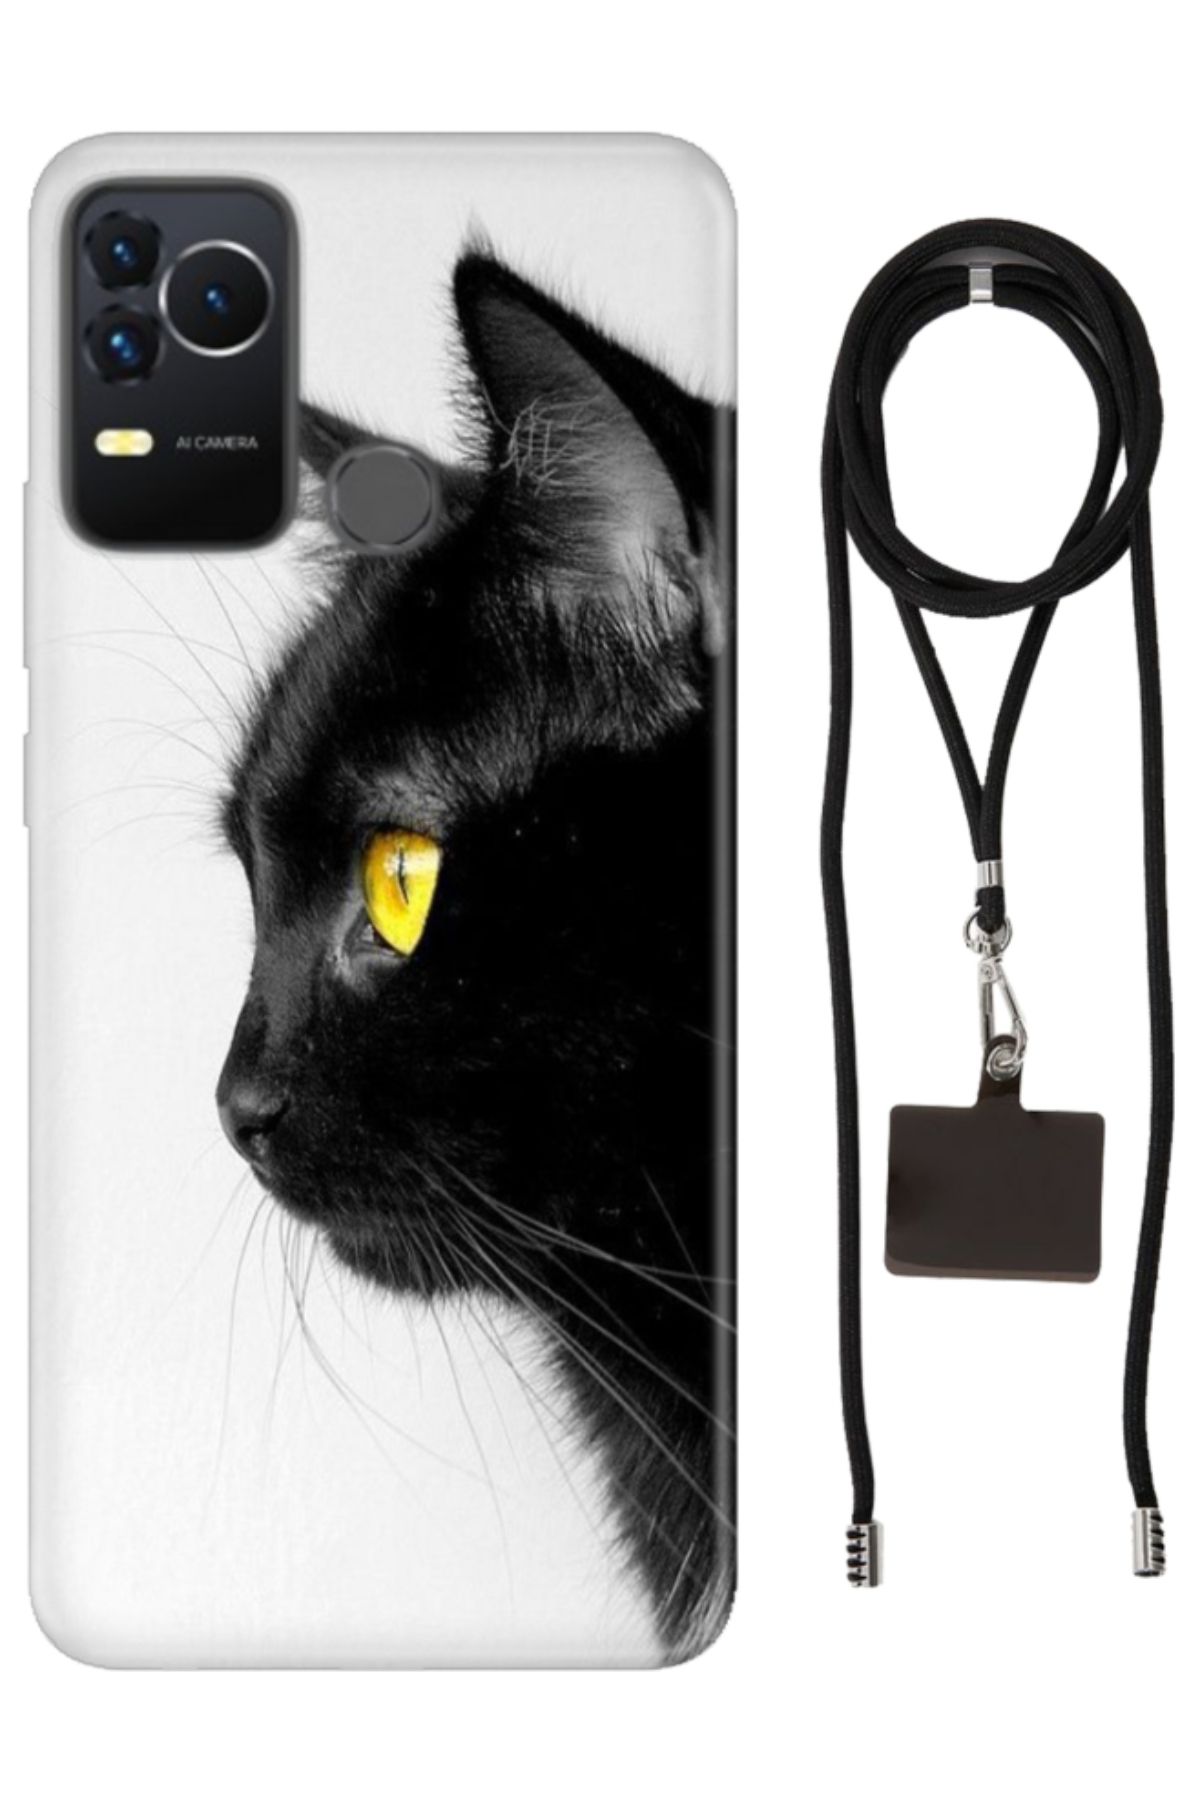 omix X400 Uyumlu Kılıf Boyun Askılı Telefon Askısı / Desenli Silikon Kedi Bakışı